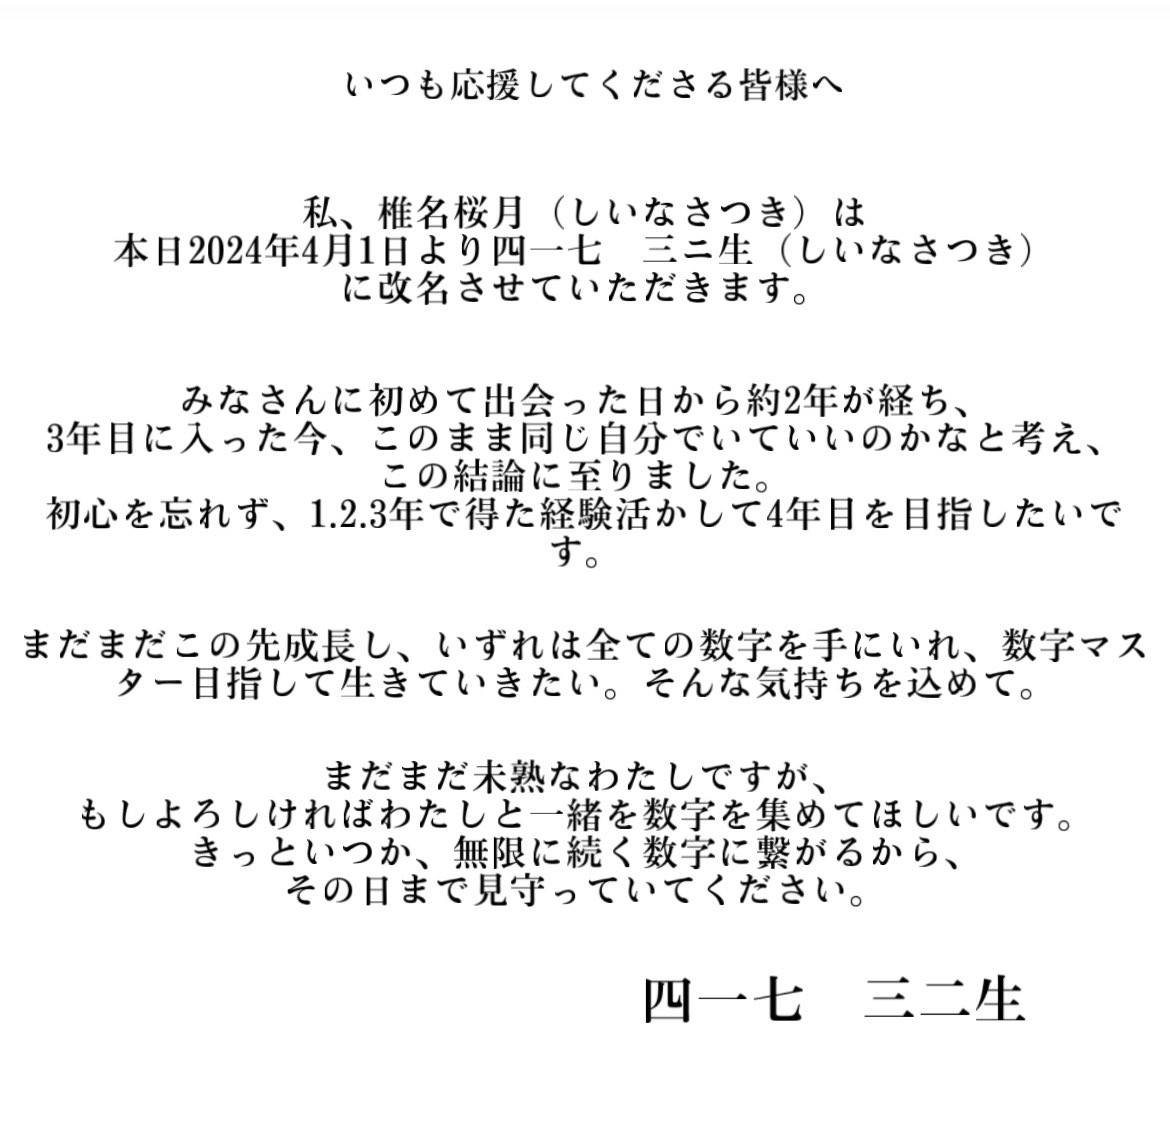 いつも椎名桜月を応援してくださる皆様へ

わたしからのご報告です

よろしくお願いします。